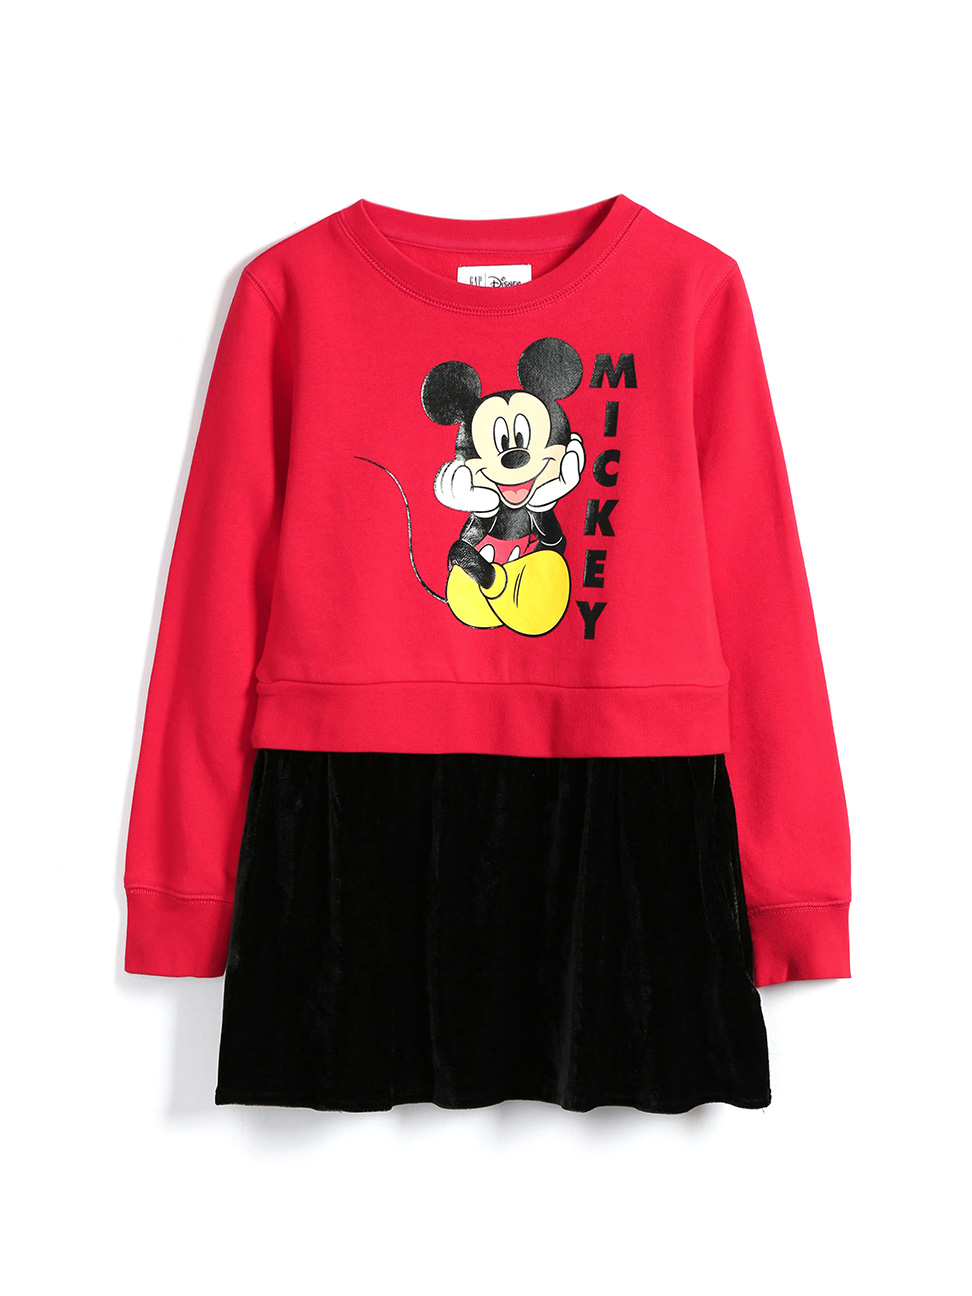 女童裝|Gap x Disney迪士尼聯名 米奇米妮印花圓領長袖洋裝-正紅色